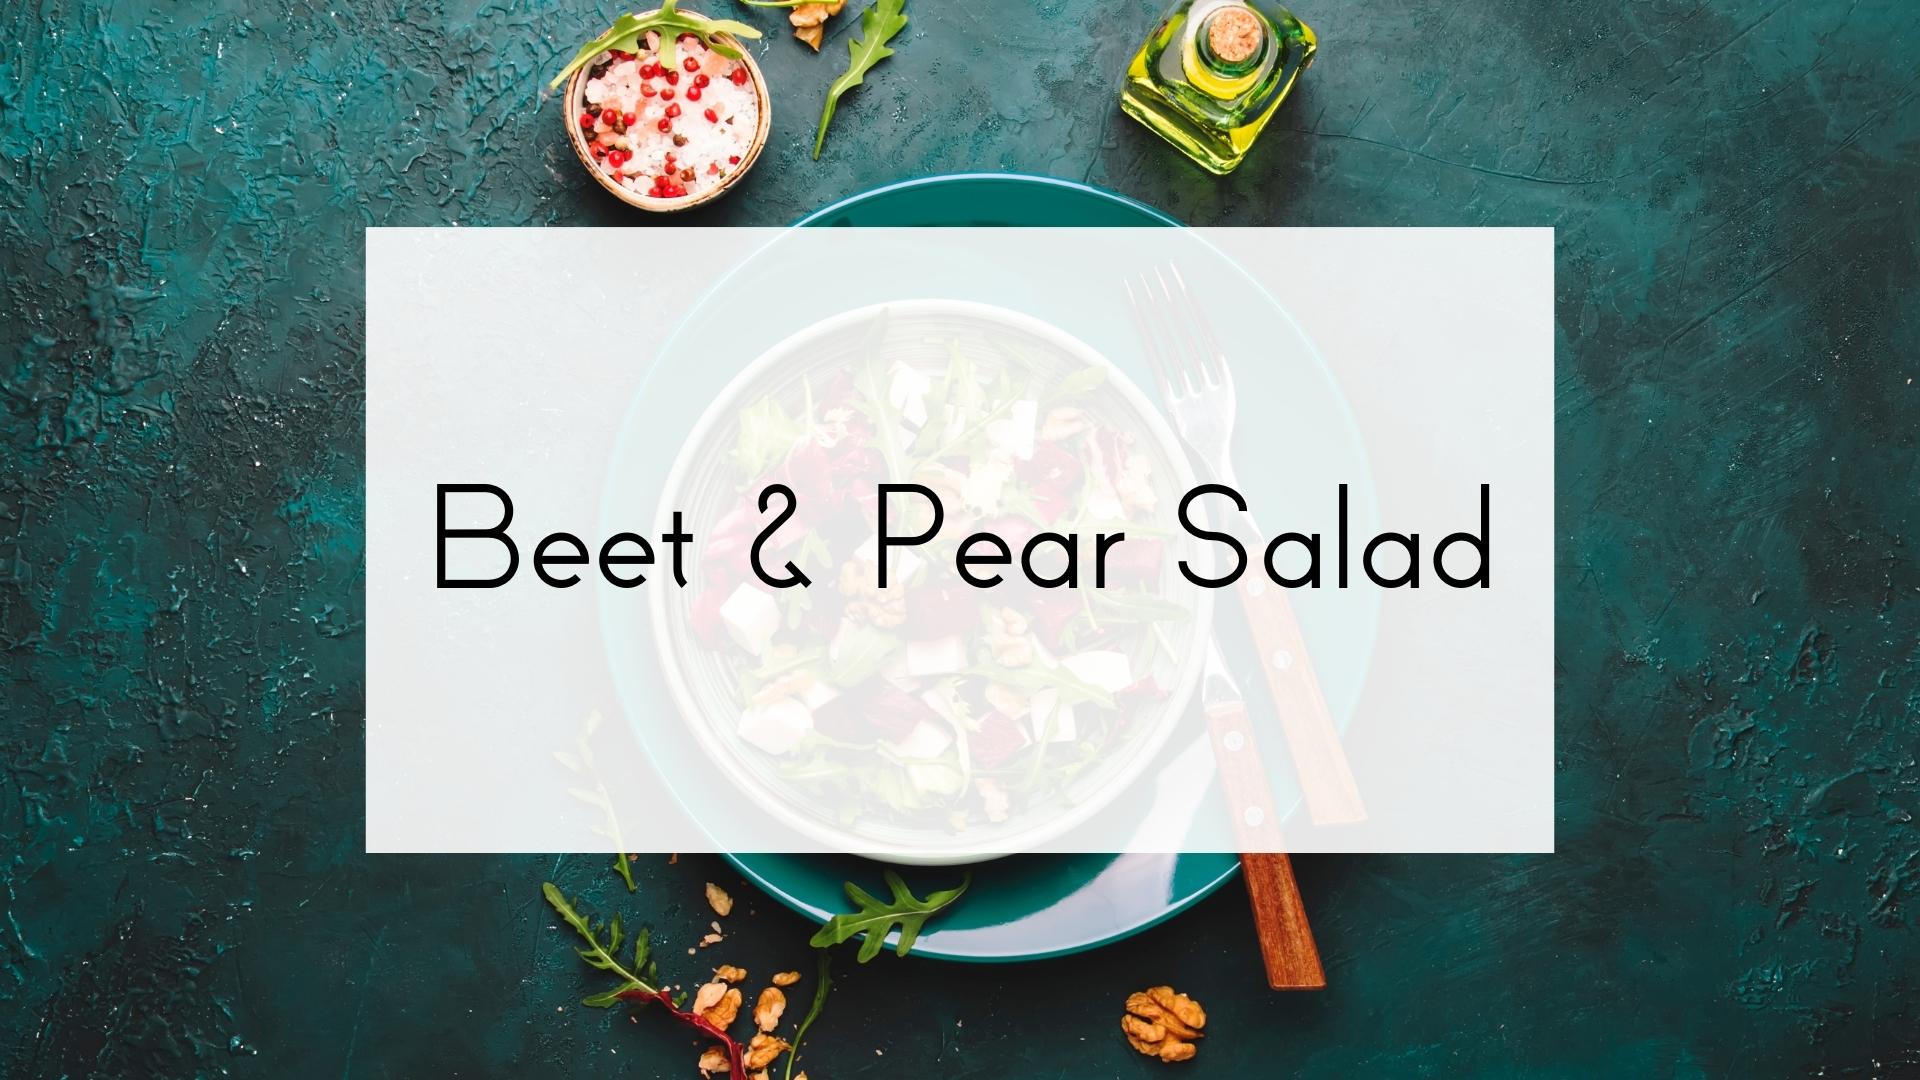 Beet & Pear Salad